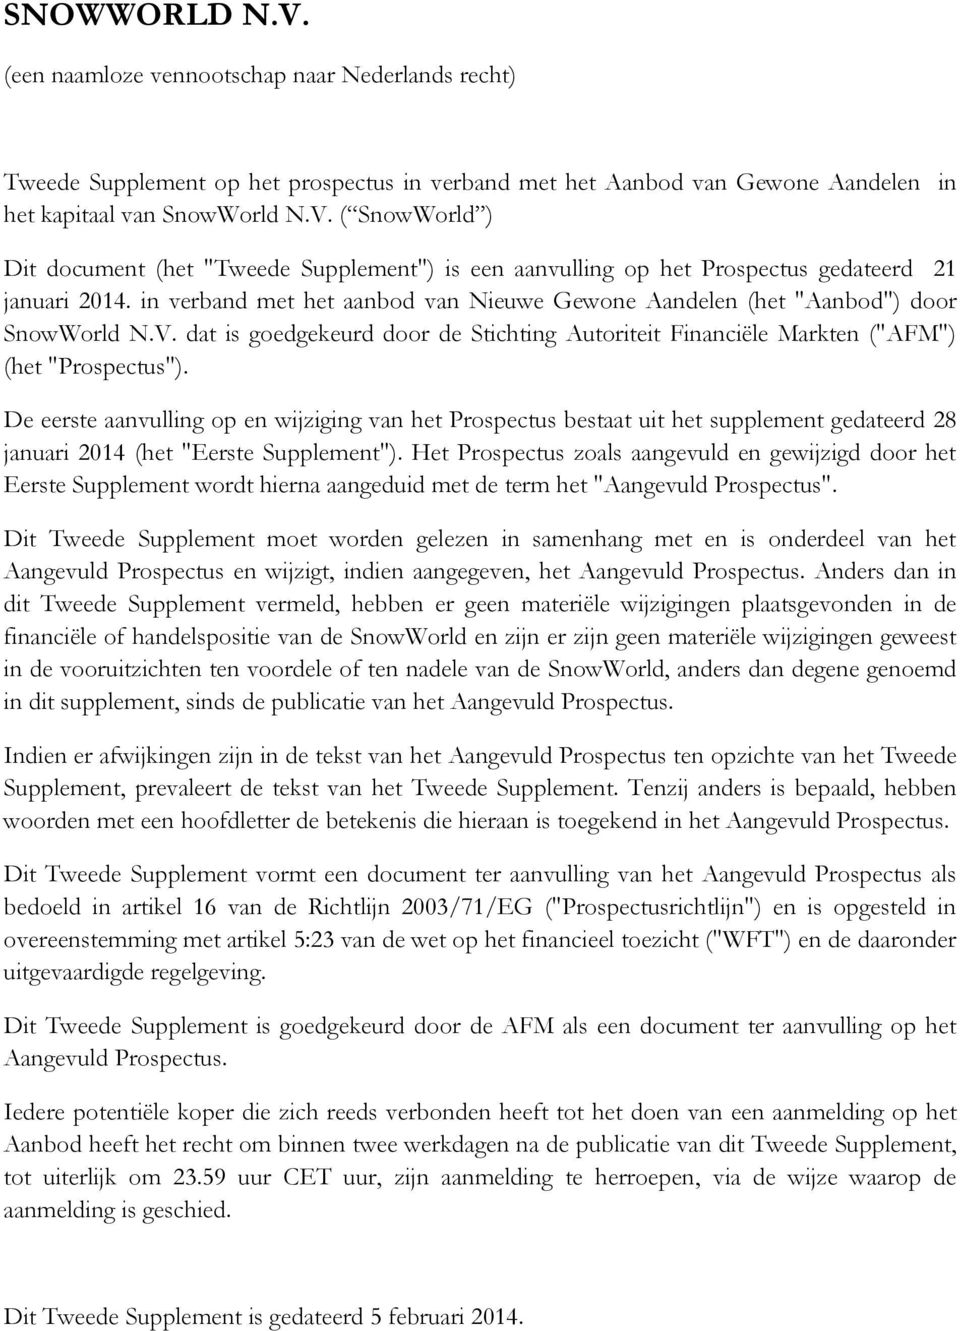 De eerste aanvulling op en wijziging van het Prospectus bestaat uit het supplement gedateerd 28 januari 2014 (het "Eerste Supplement").